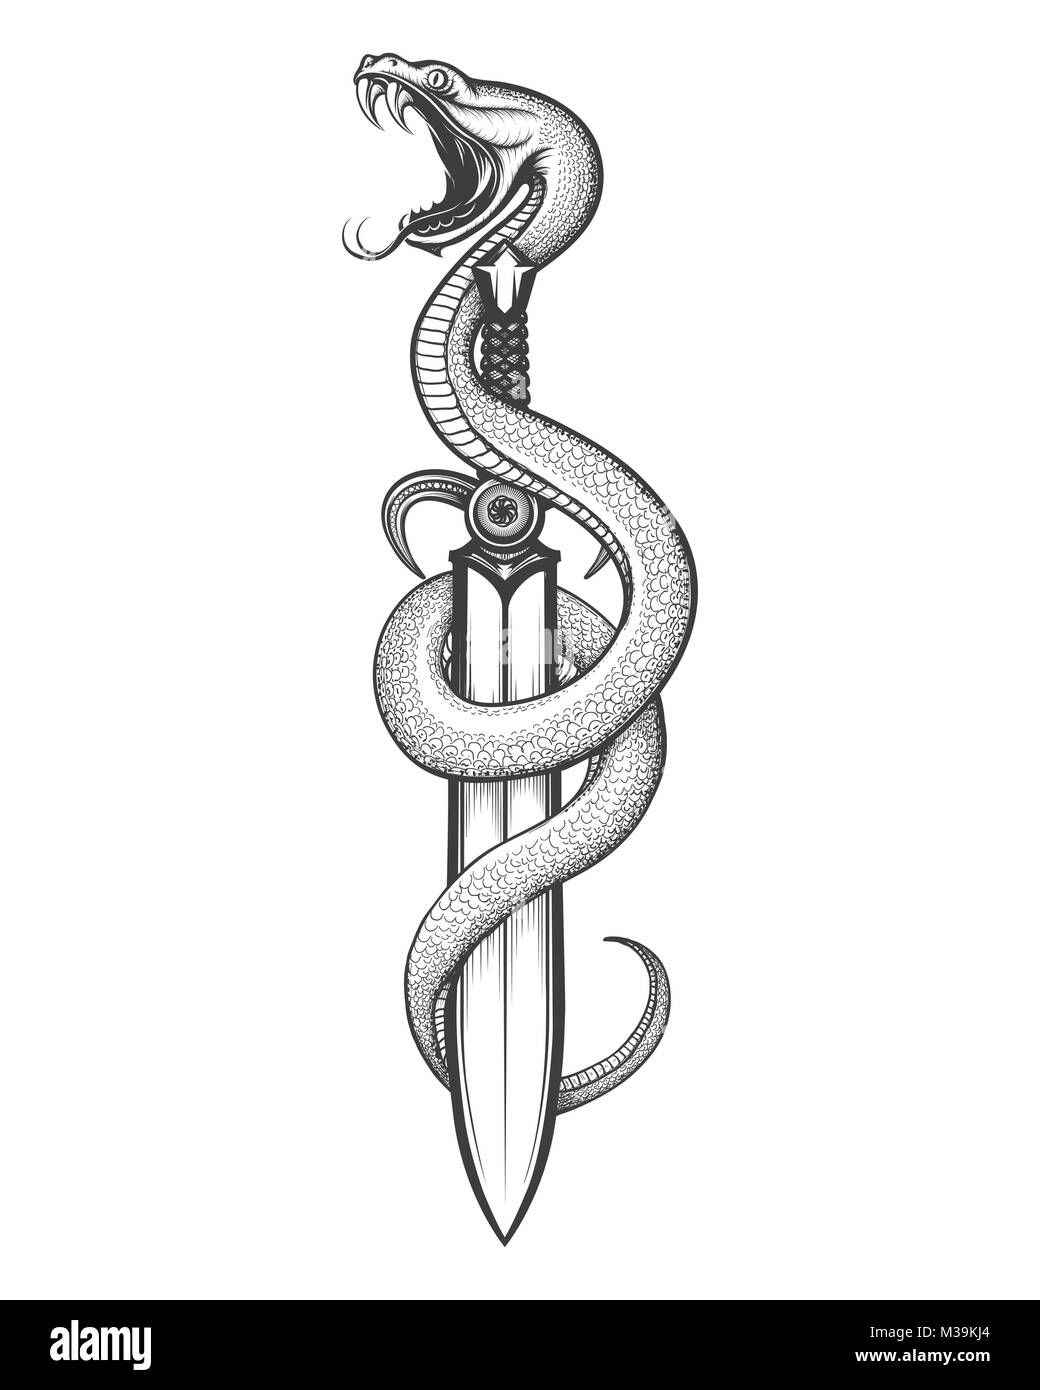 Schlange und Schwert in Tattoo Stil gezeichnet. Vector Illustration  Stock-Vektorgrafik - Alamy